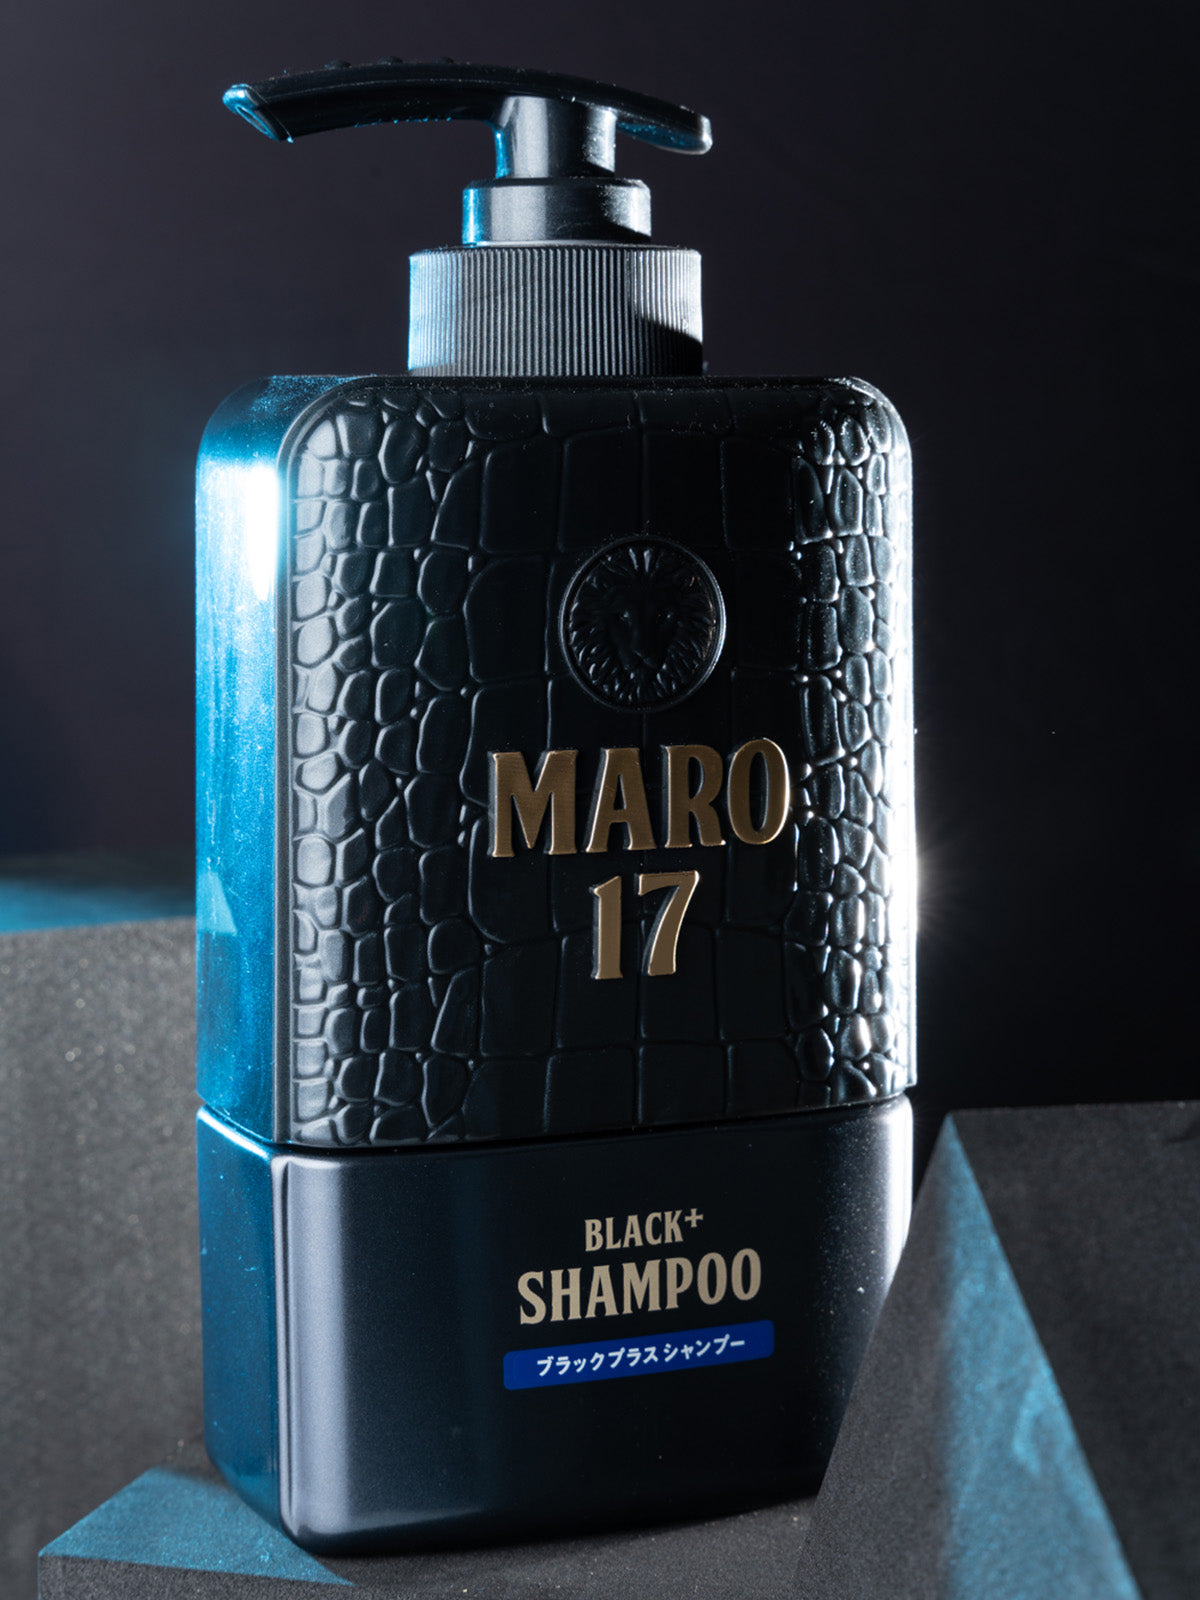 シャンプー ブラックプラス [ハリコシのある黒髪へ] ジェントルミントの香り MARO17 マーロ17 300mL 詰替